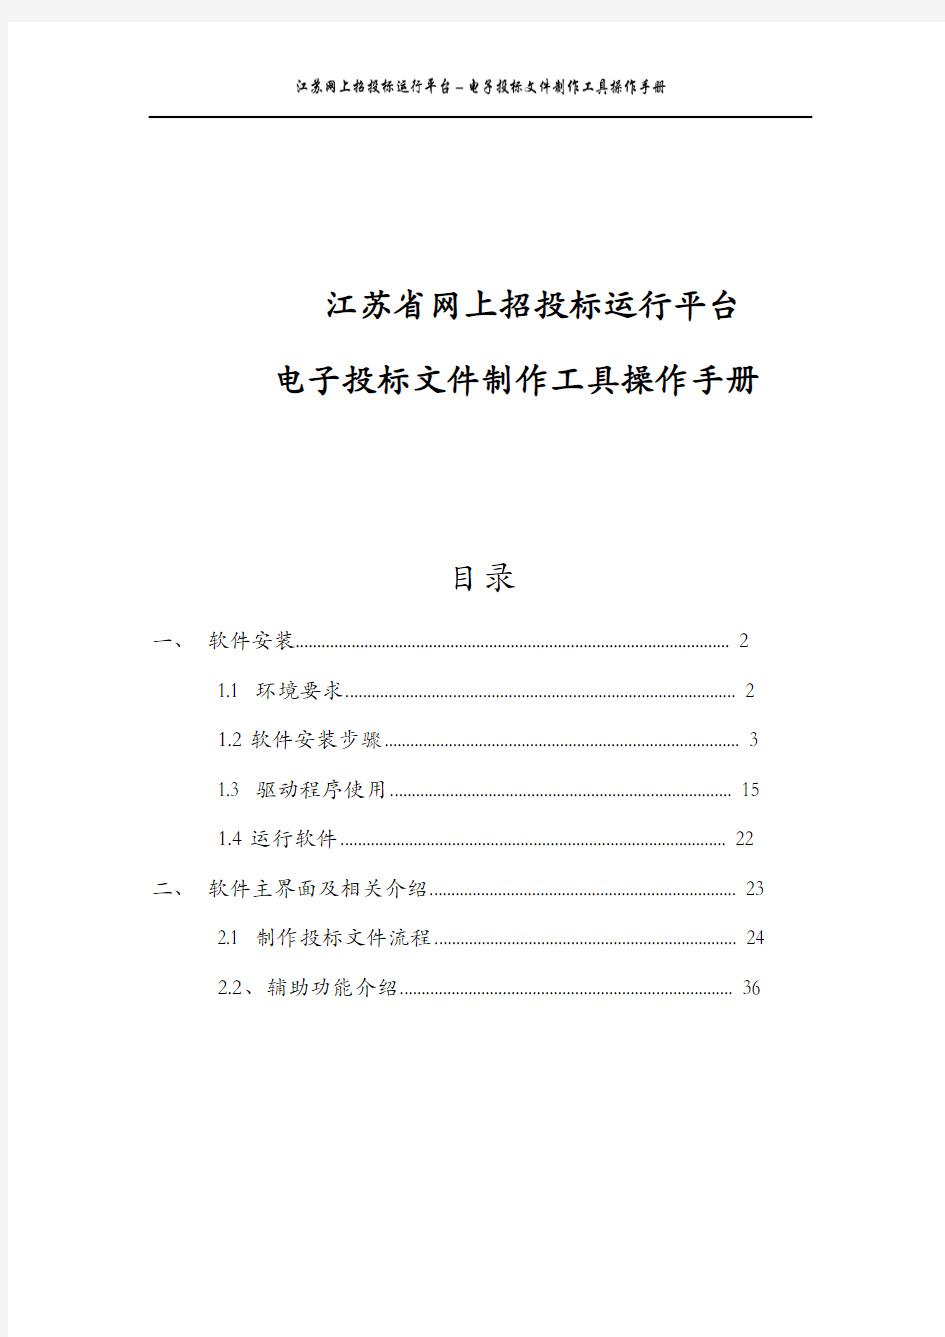 江苏省网上招投标运行平台电子投标文件制作工具操作手册